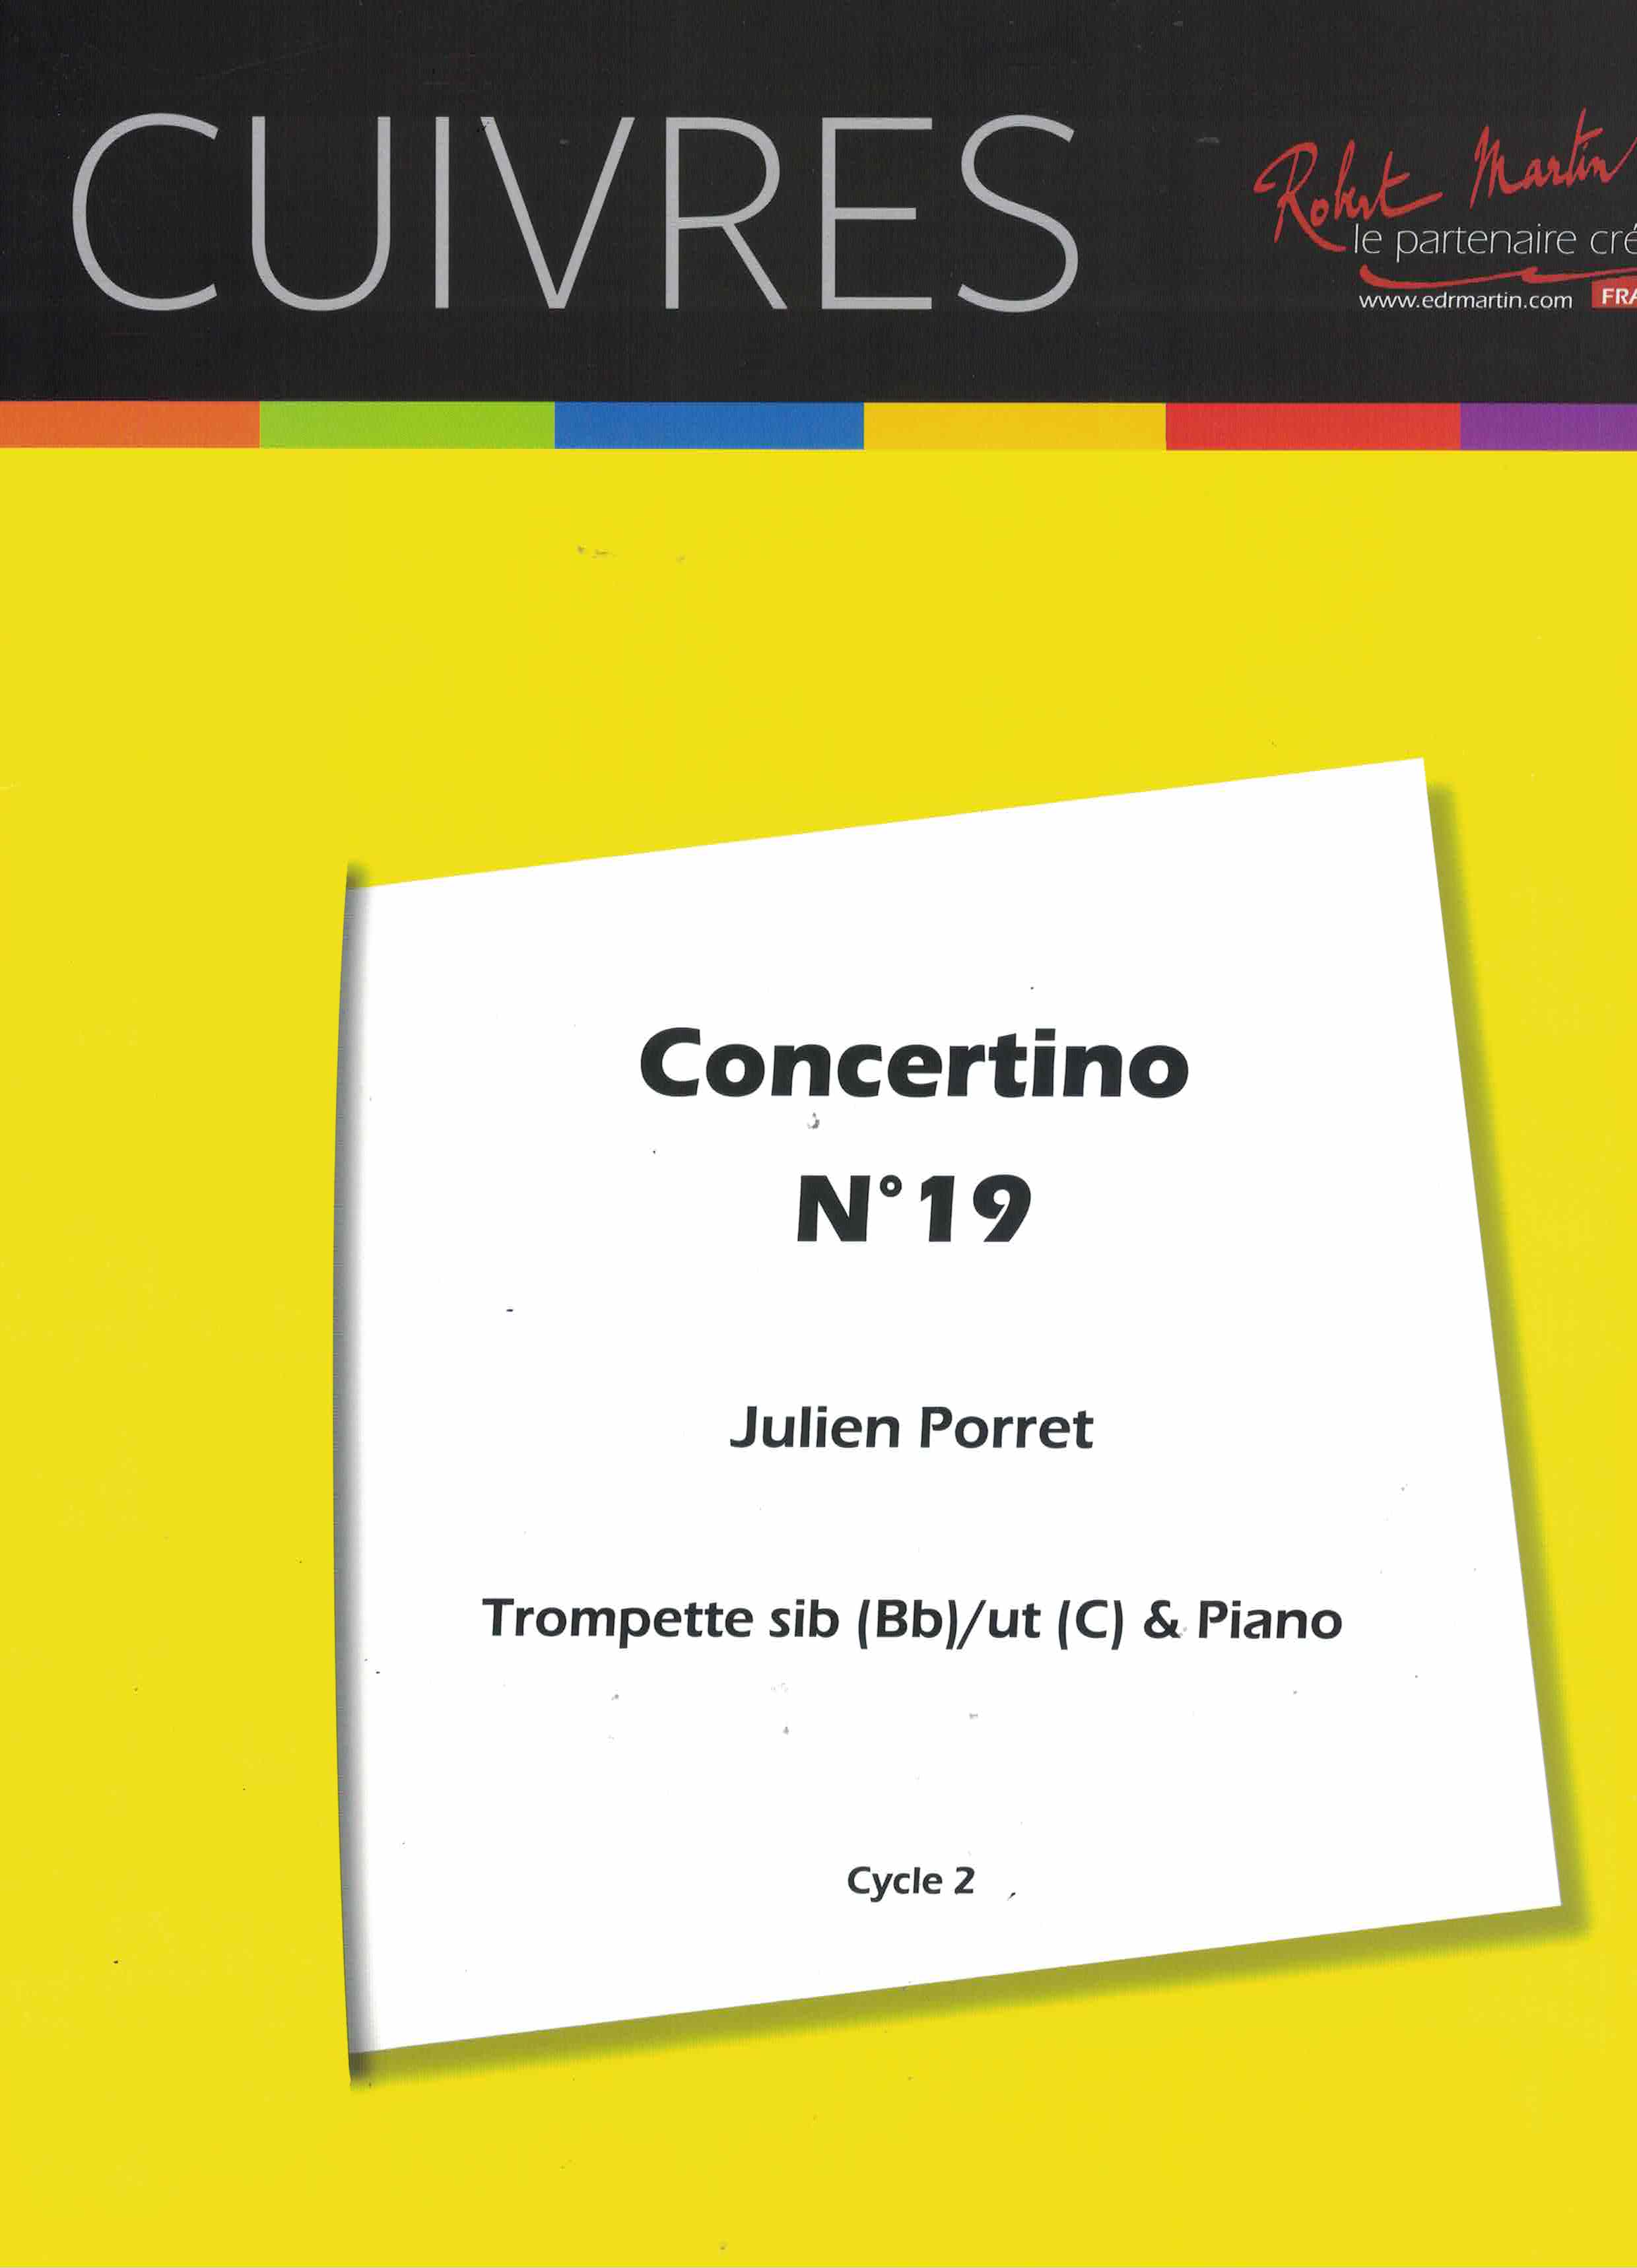 Concertino 19, Julien Porret, Trp Klav